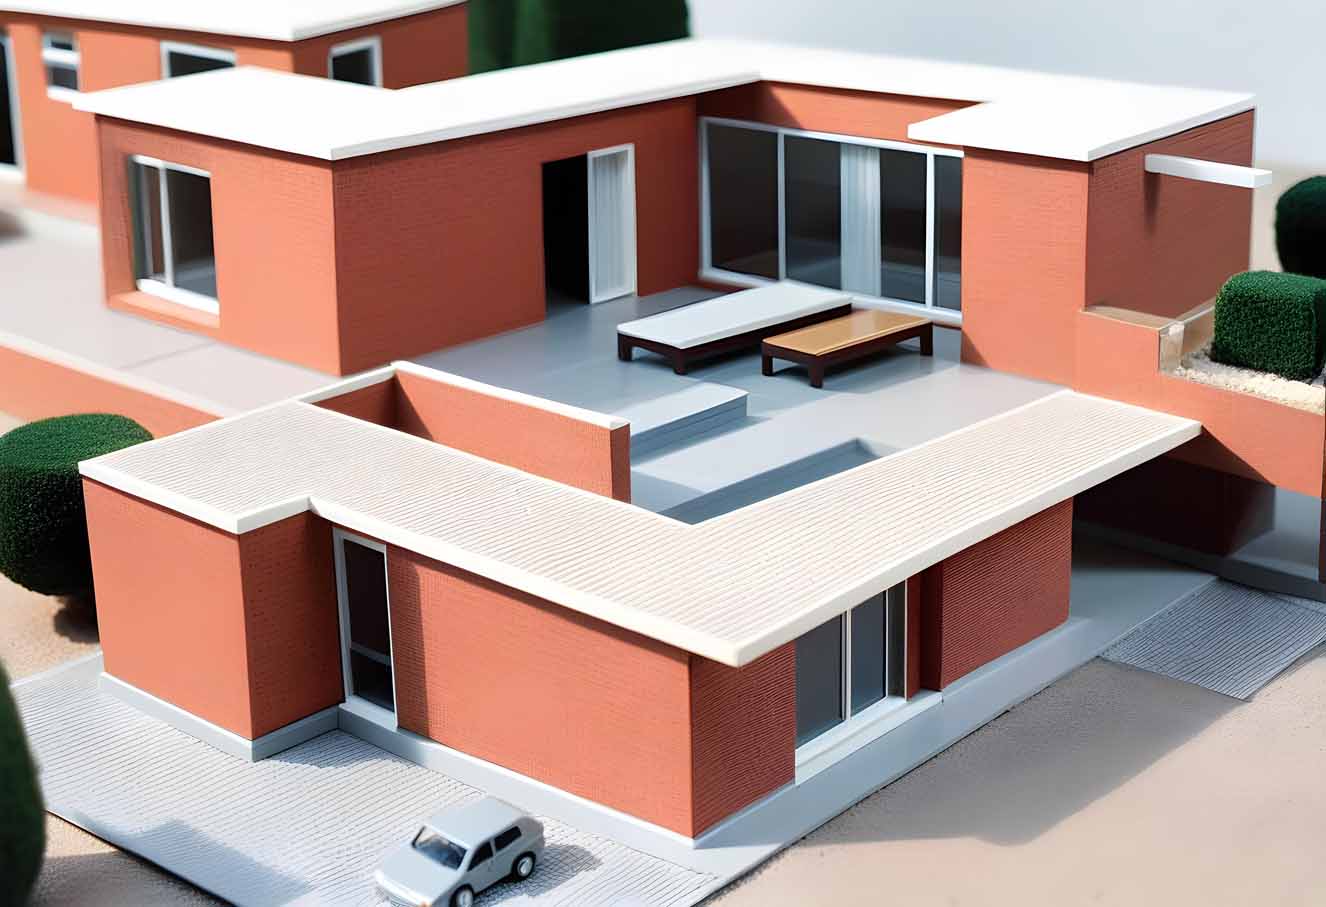 Apartments model